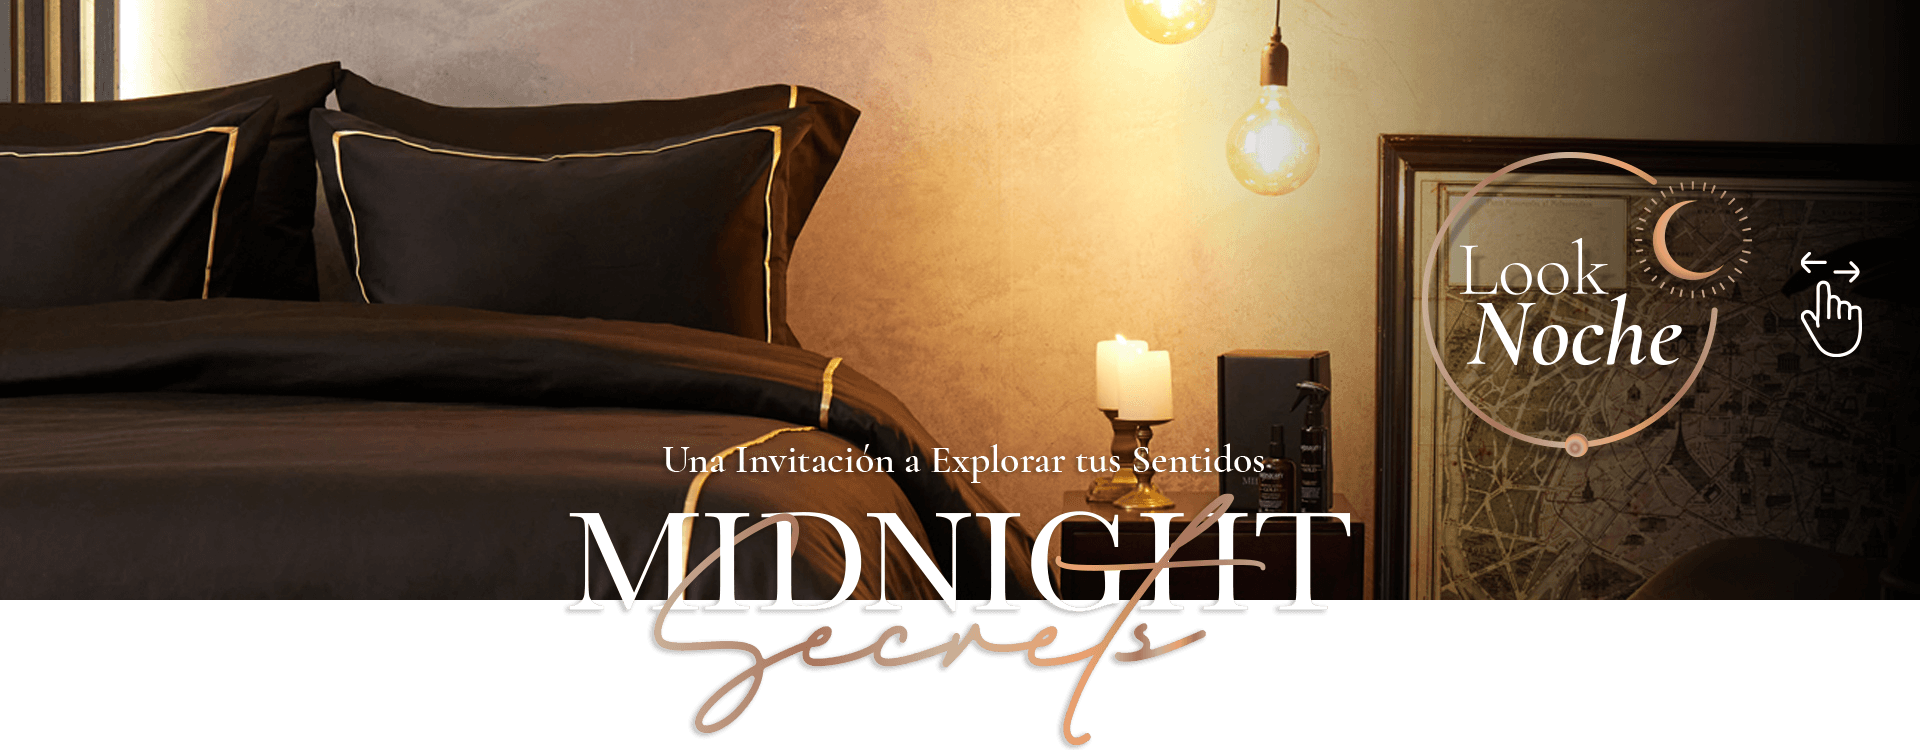 Midnight Secrets Noche